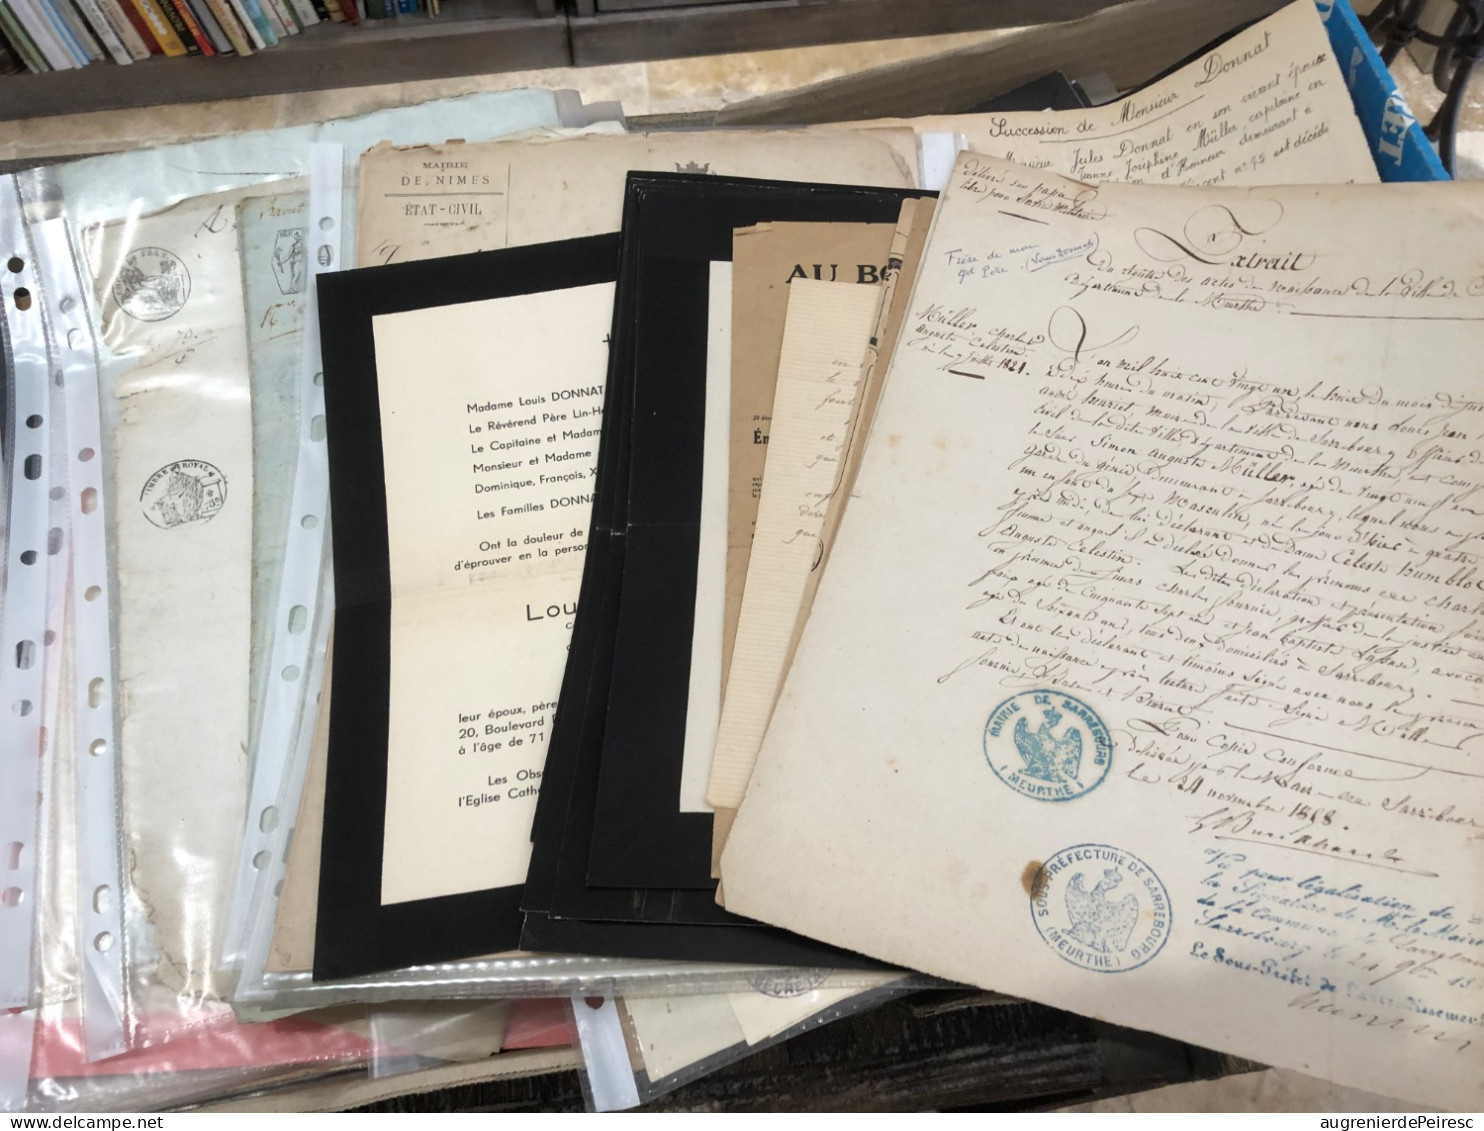 Lot De 55 Documents Famille DONNAT -Muller-Seguelat-Huart 1795-1940 Bas Rhin- Ariège - Pas De Calais - Documenti Storici